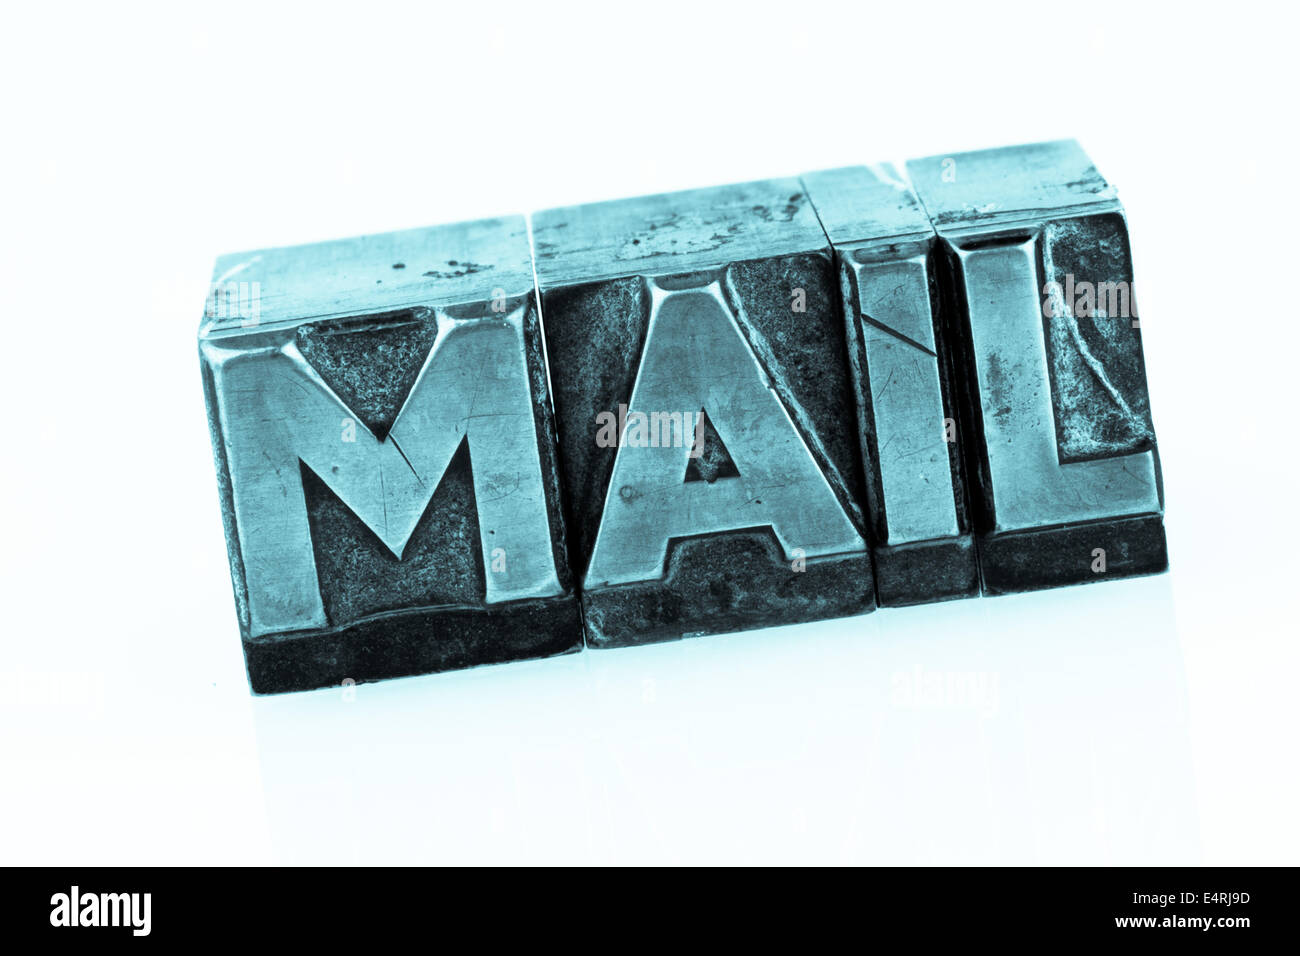 "La parola ''e-mail'' in lettere di piombo scritto. foto simbolico per corrispondenza rapida', das Wort ' e-mail ' in Bleibuchstaben Foto Stock